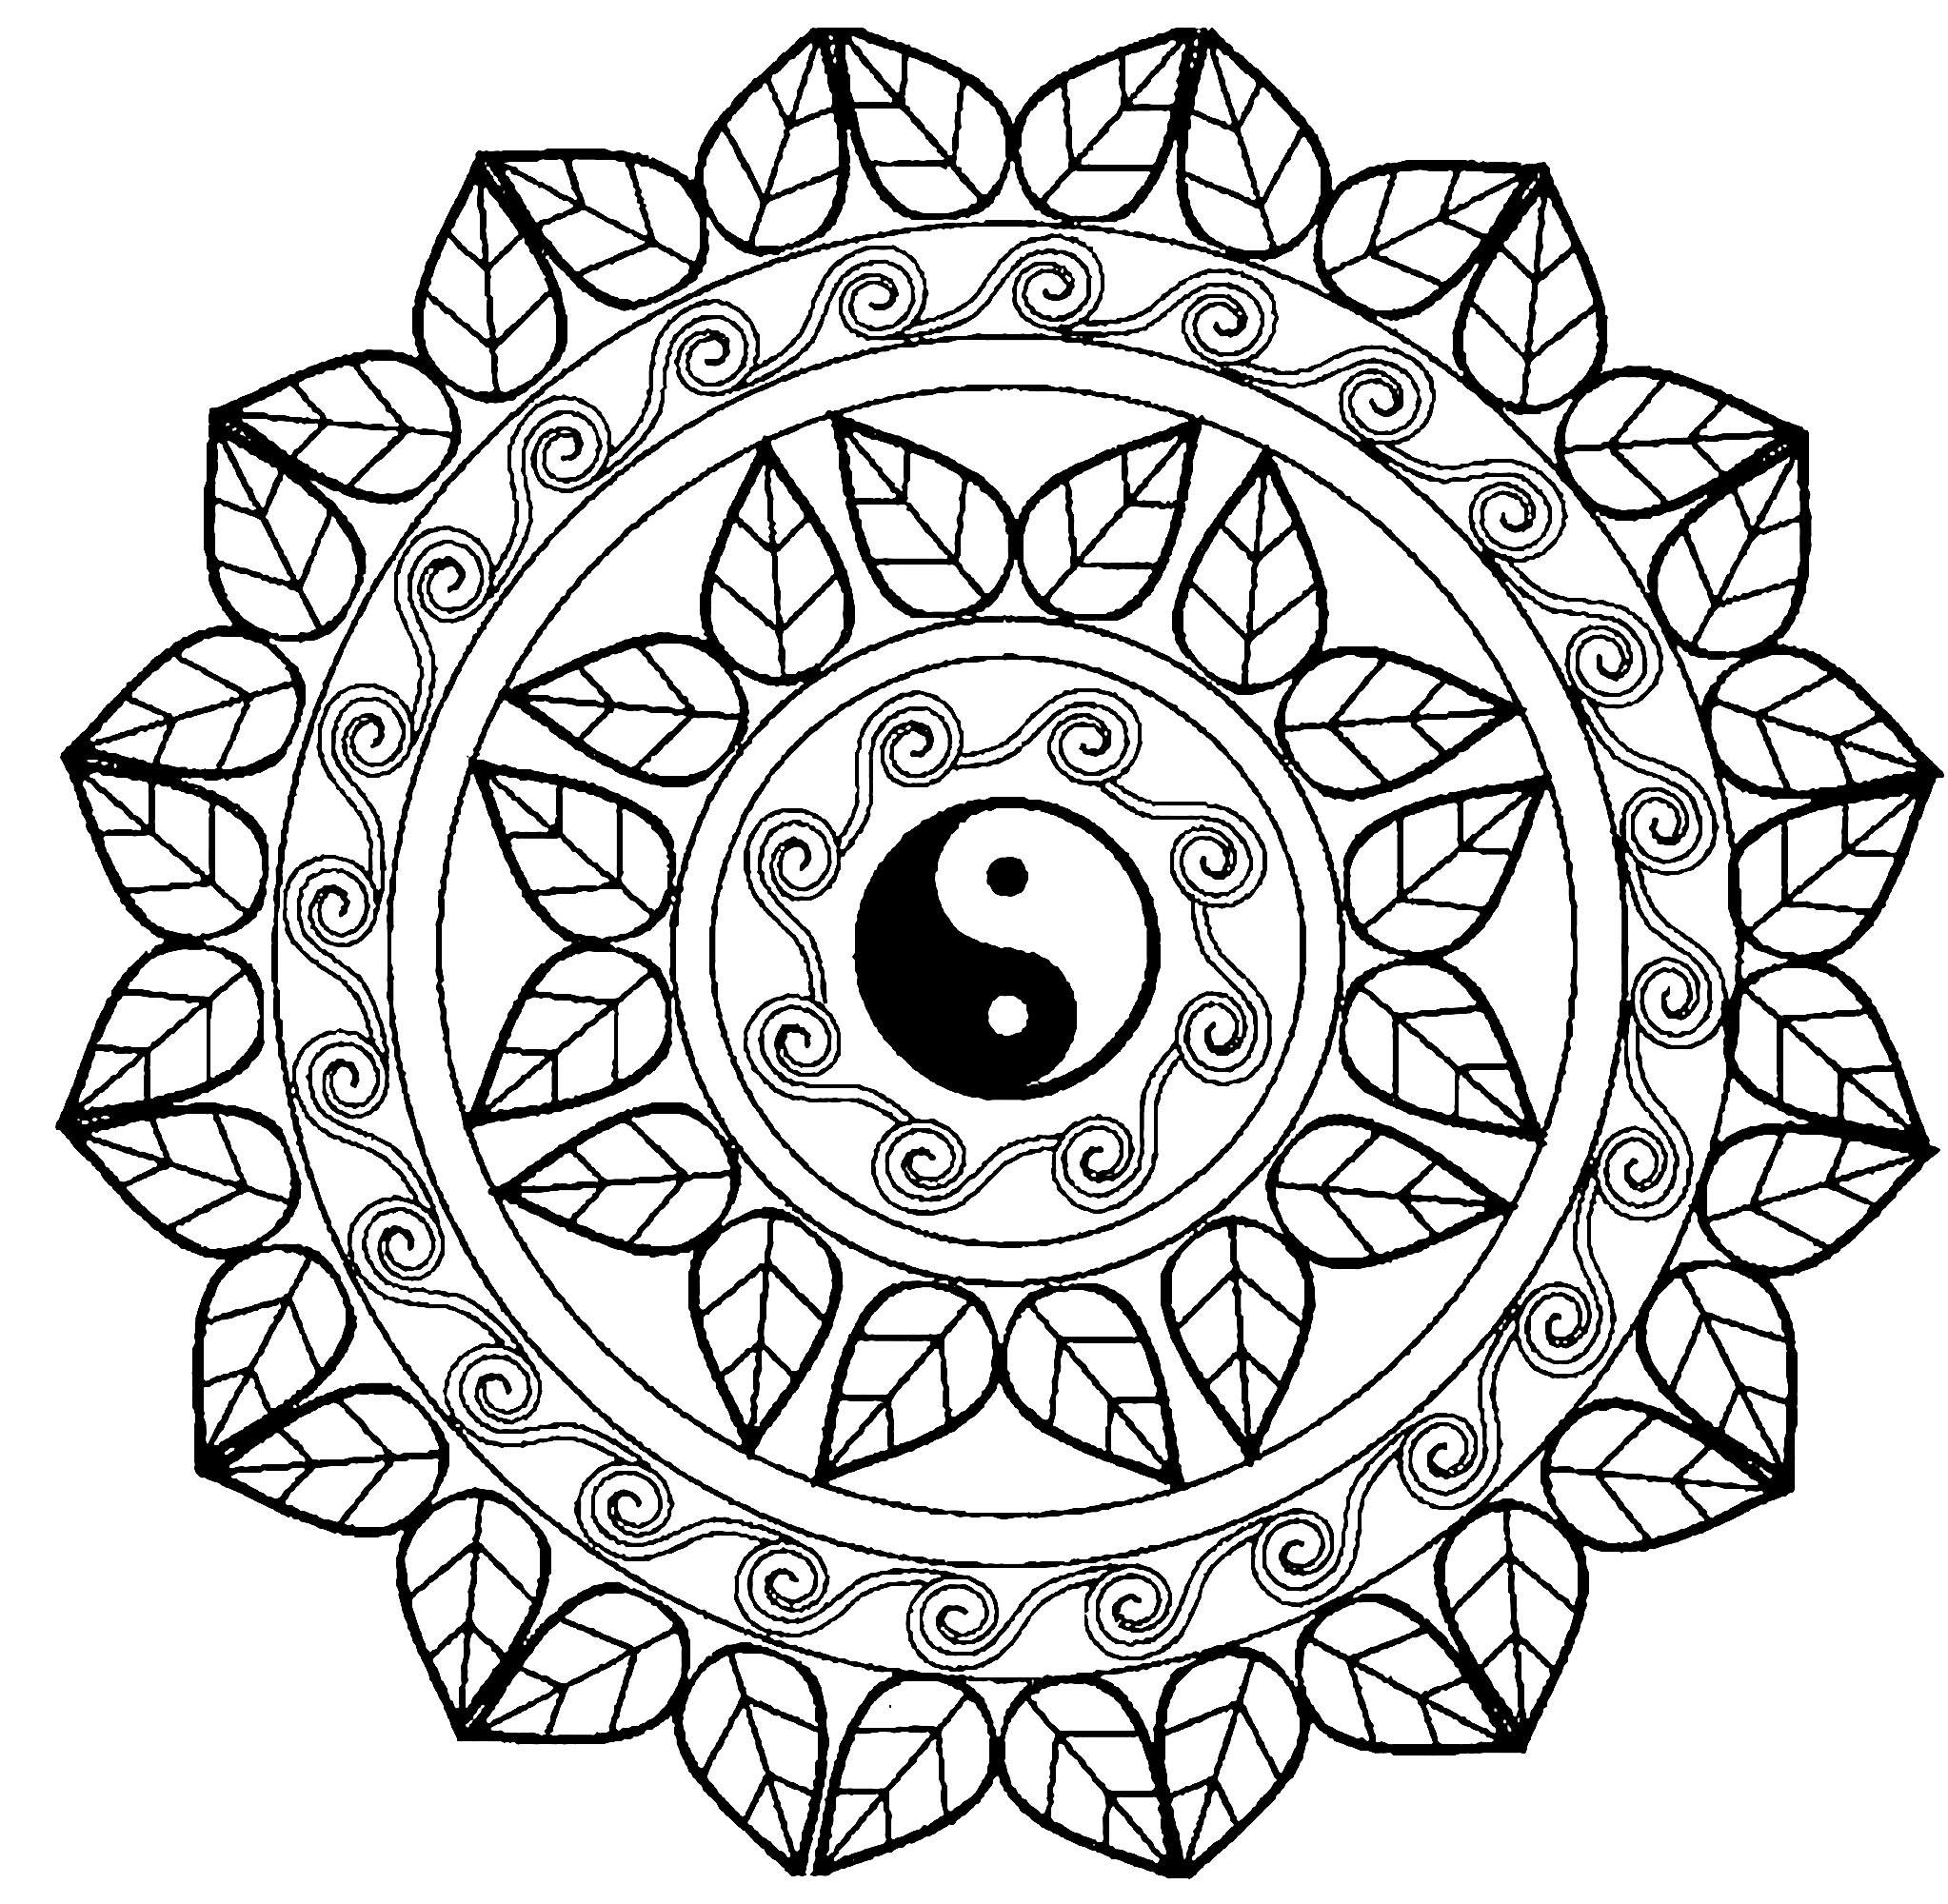 Beaucoup de petits détails et de zones assez réduites, pour un Mandala Yin & Yang au final très original et harmonieux.